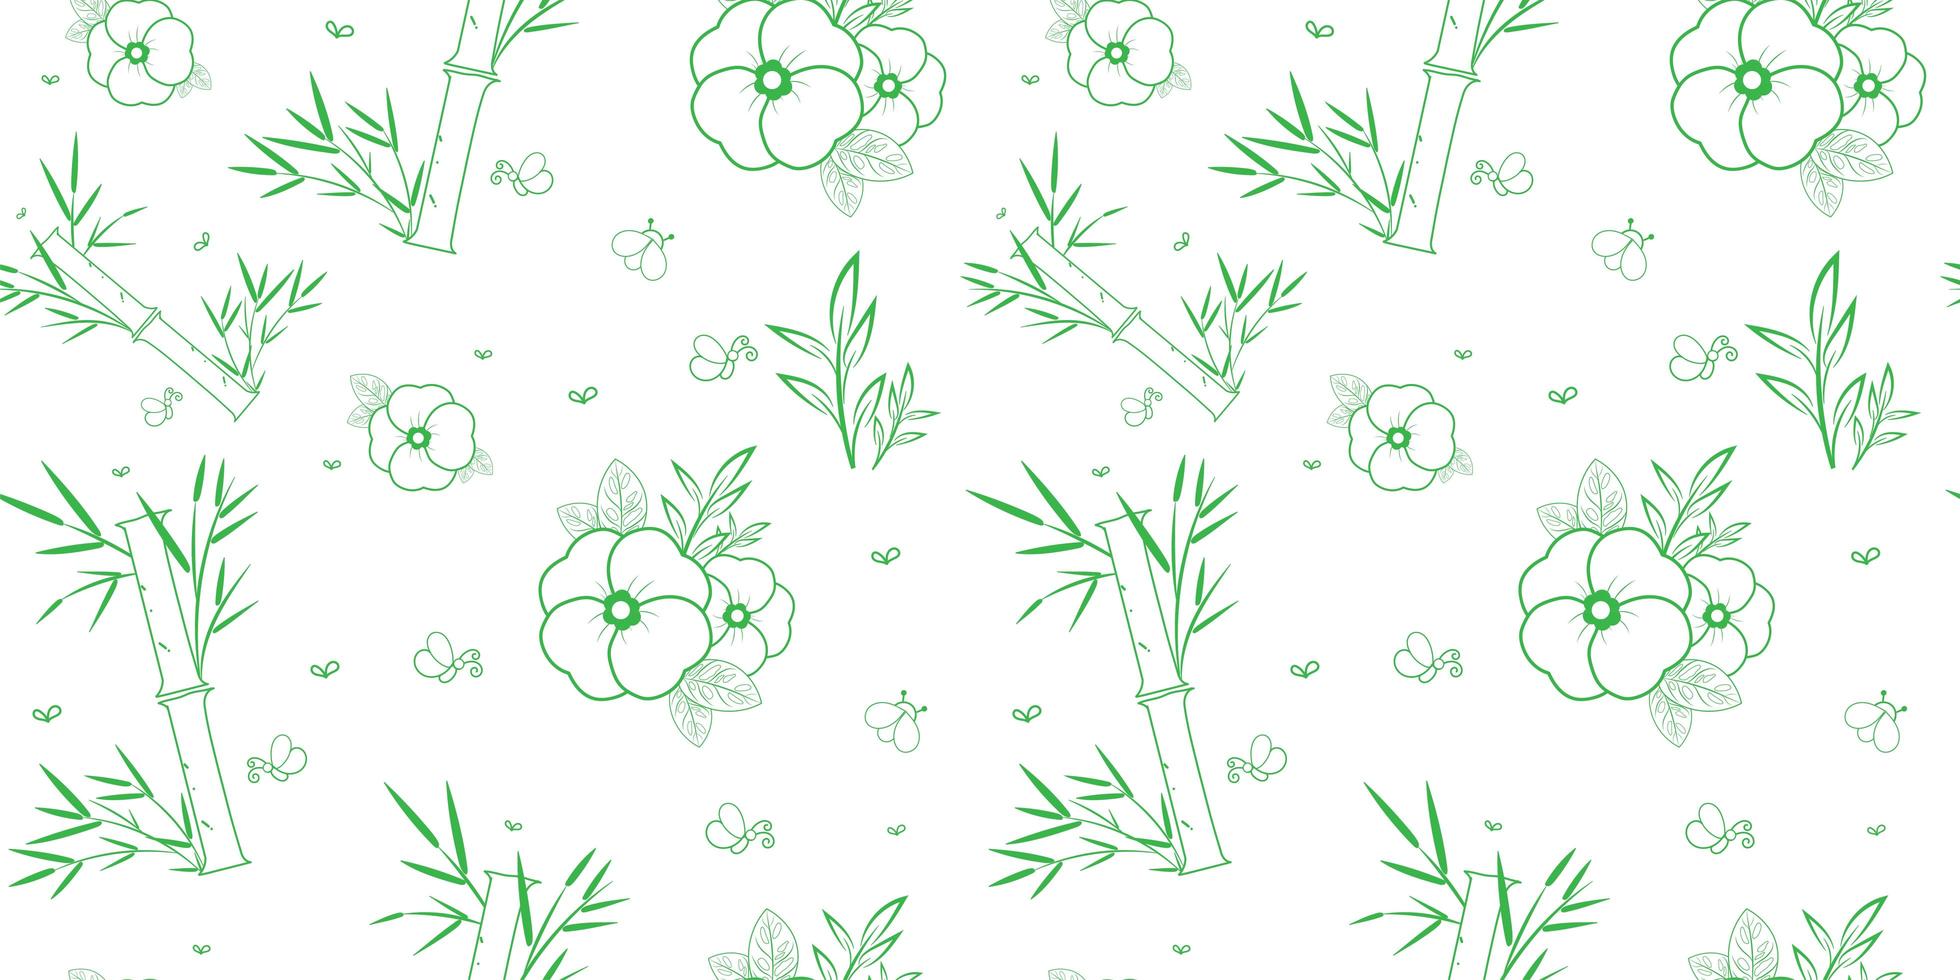 groen en wit bamboe en bloemen naadloos patroon vector